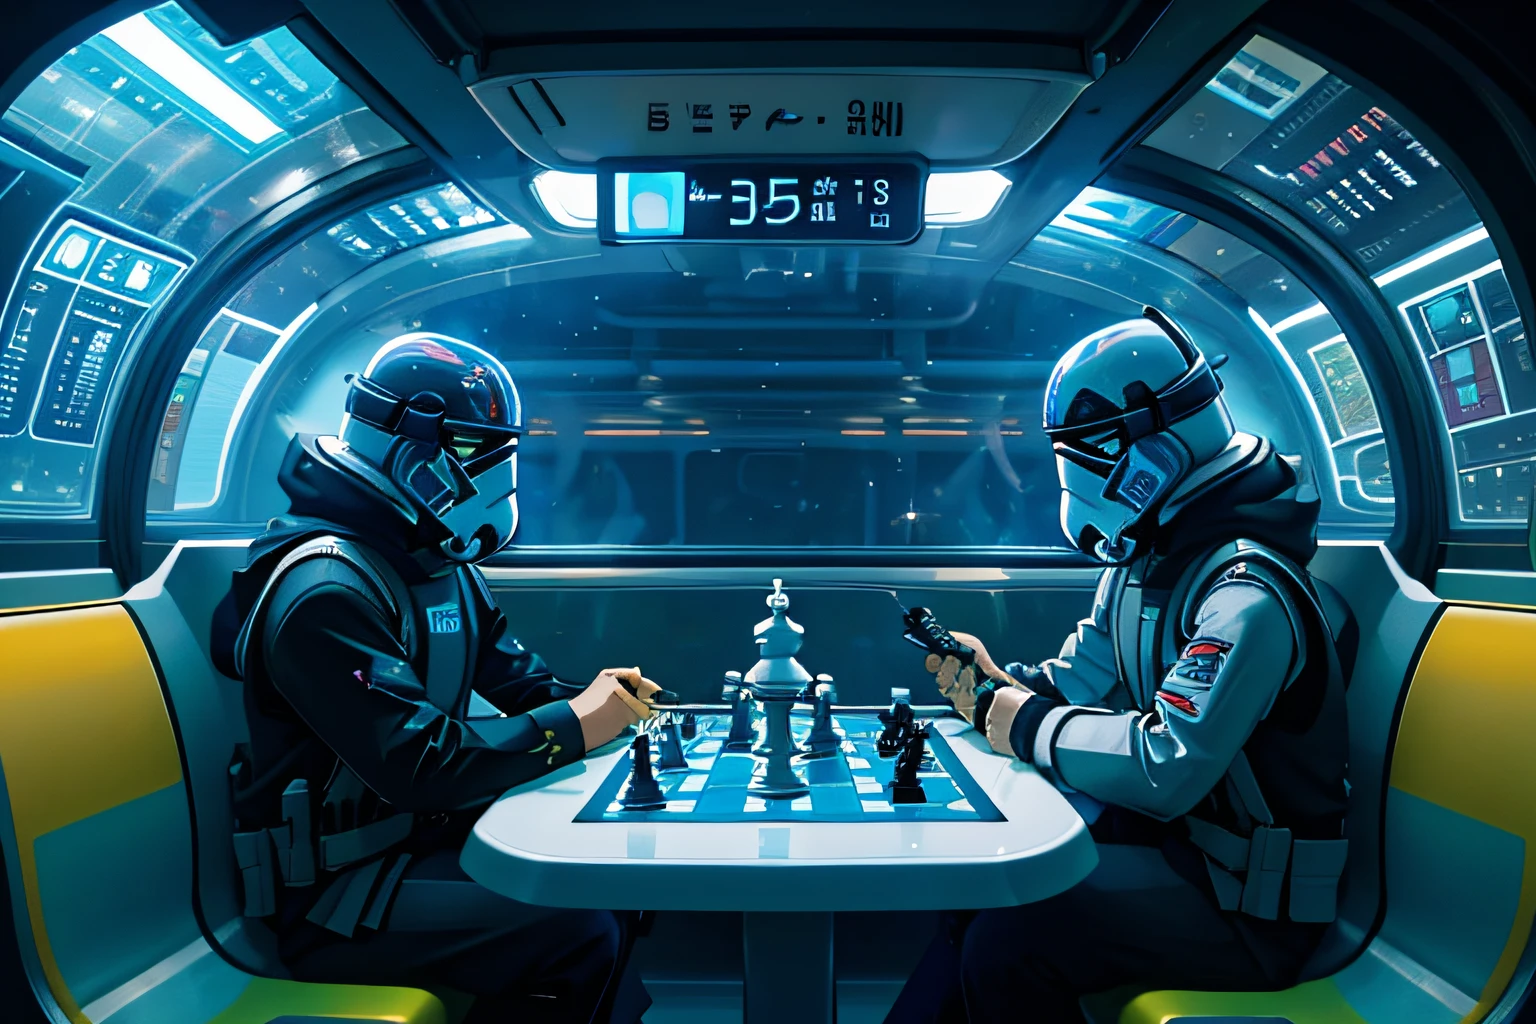 جنود العاصفة يلعبون الشطرنج الفضائي المجسم في مترو الأنفاق باللون اللامع